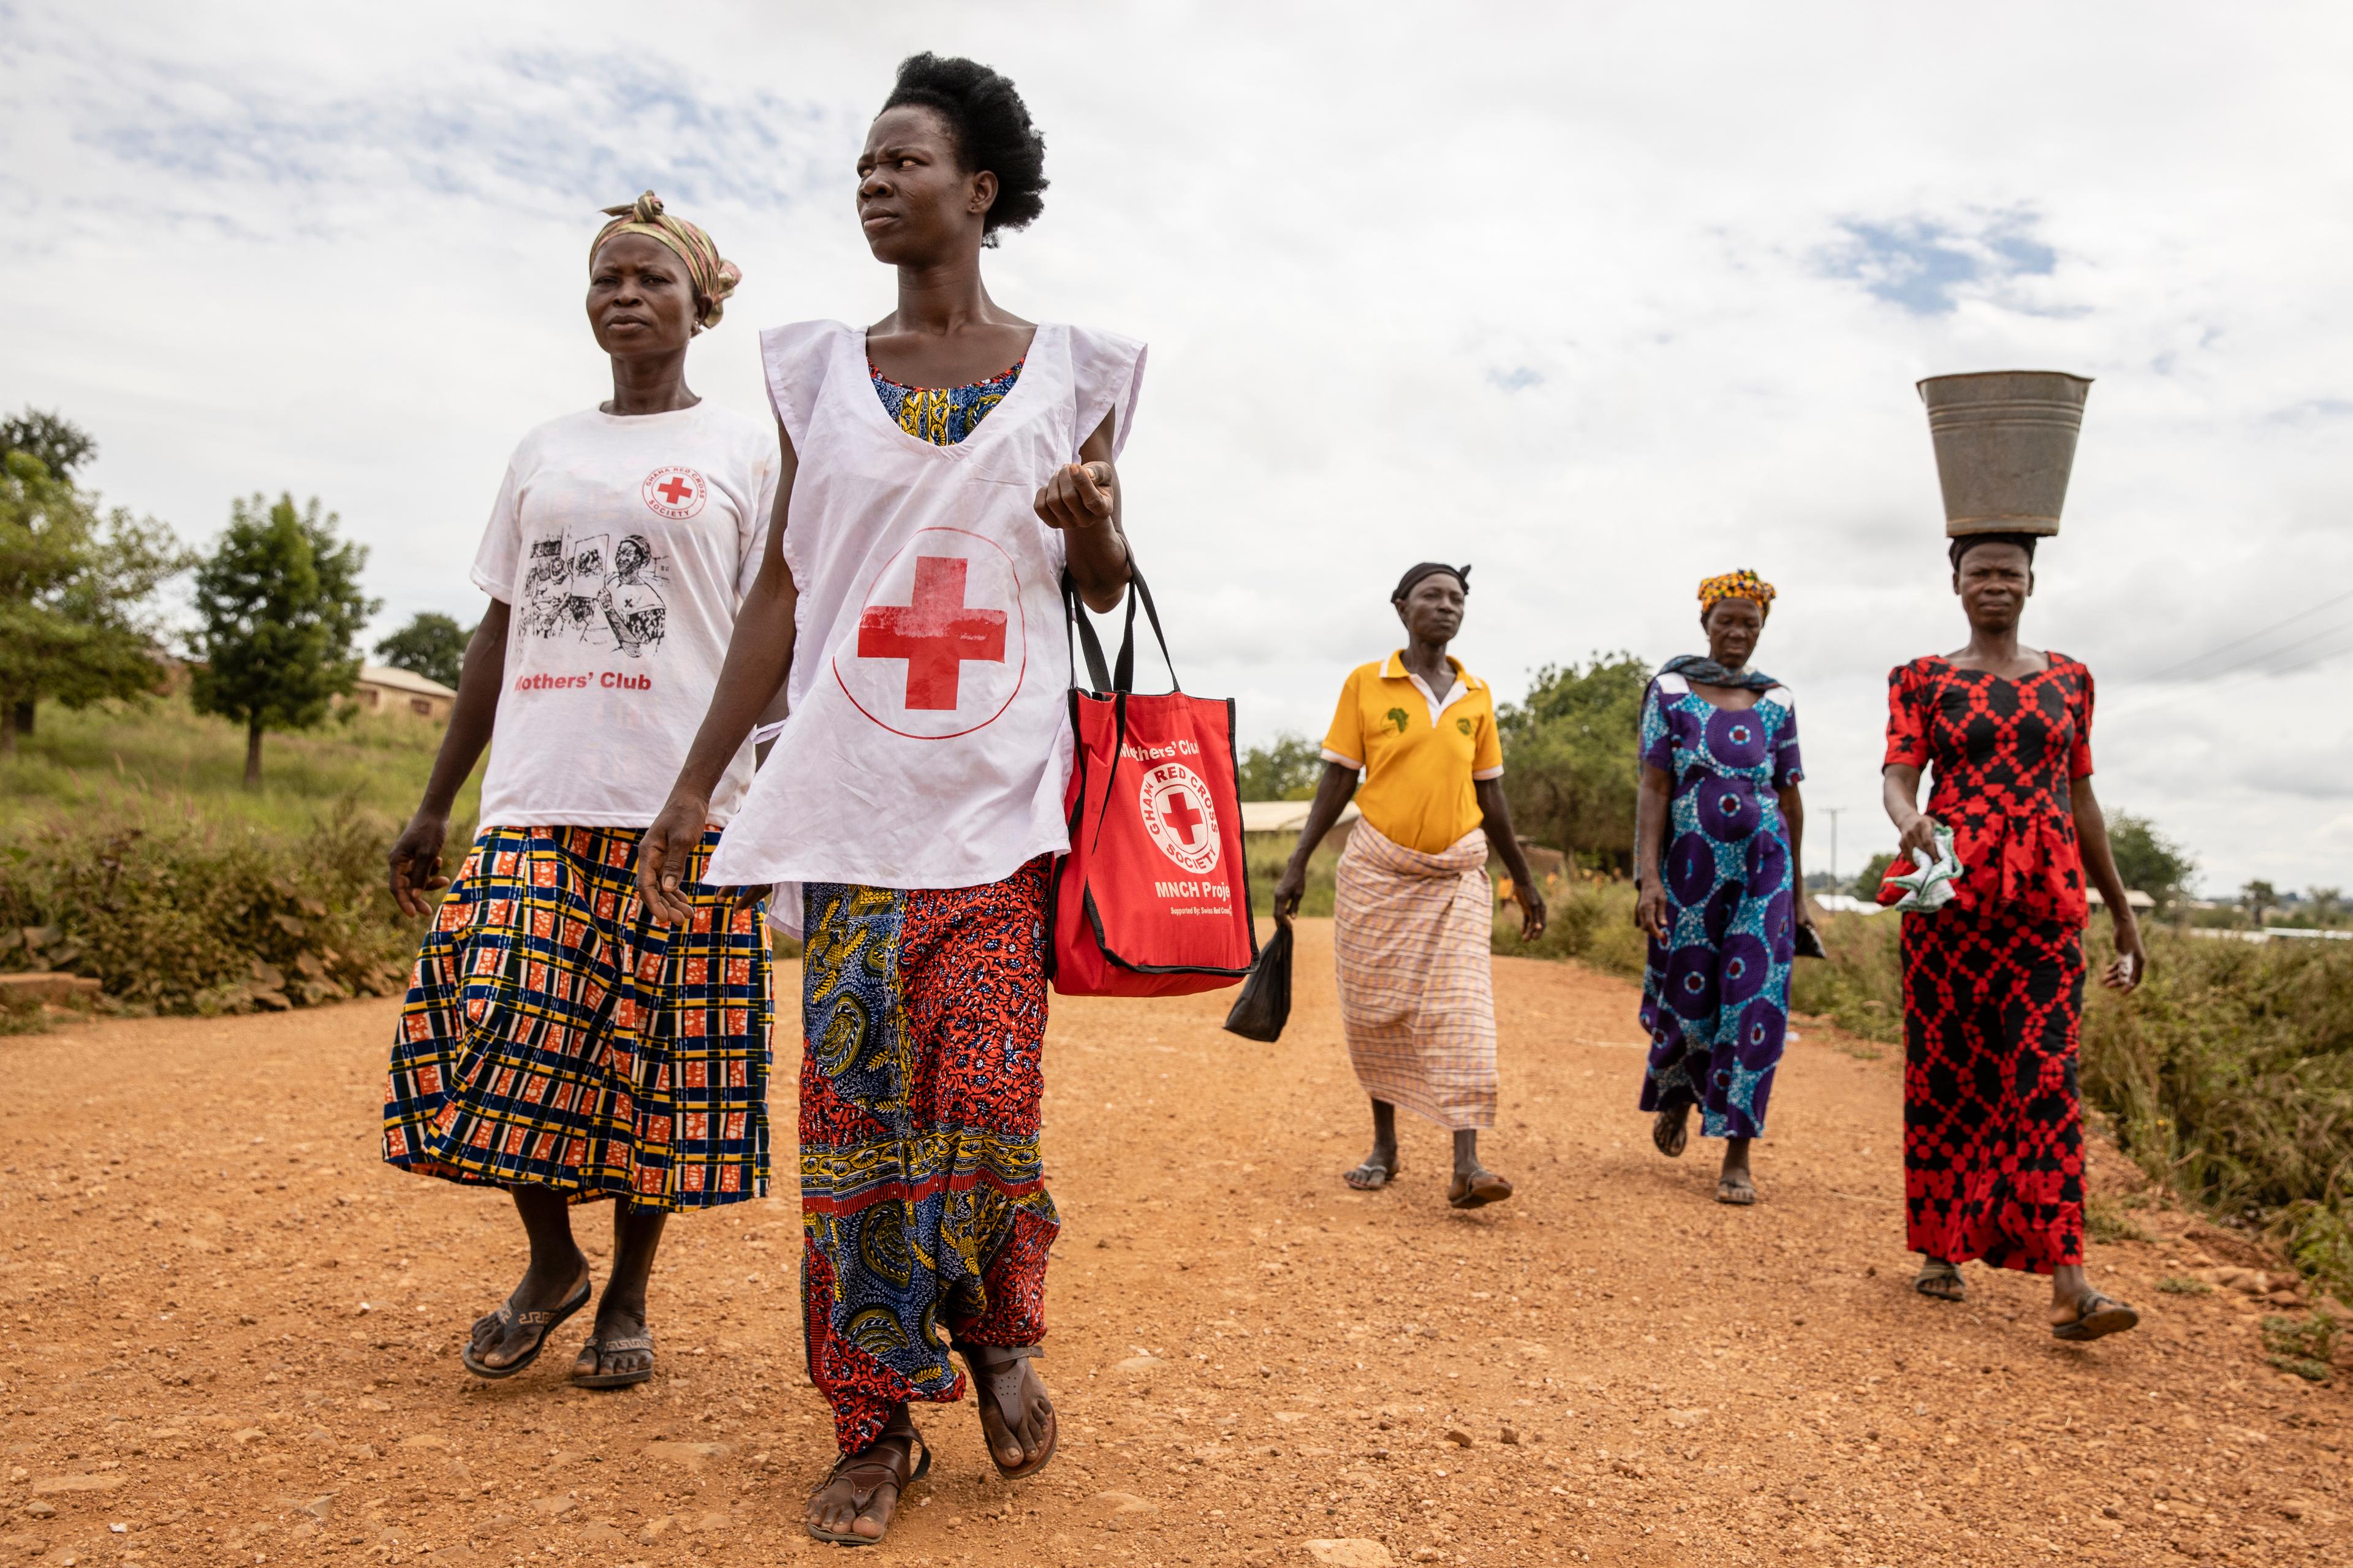 Cinq femmes se déplacent à pied. L'une porte un grand seau sur la tête, deux portent des T-shirts du Mothers Club de la Croix-Rouge ghanéenne.